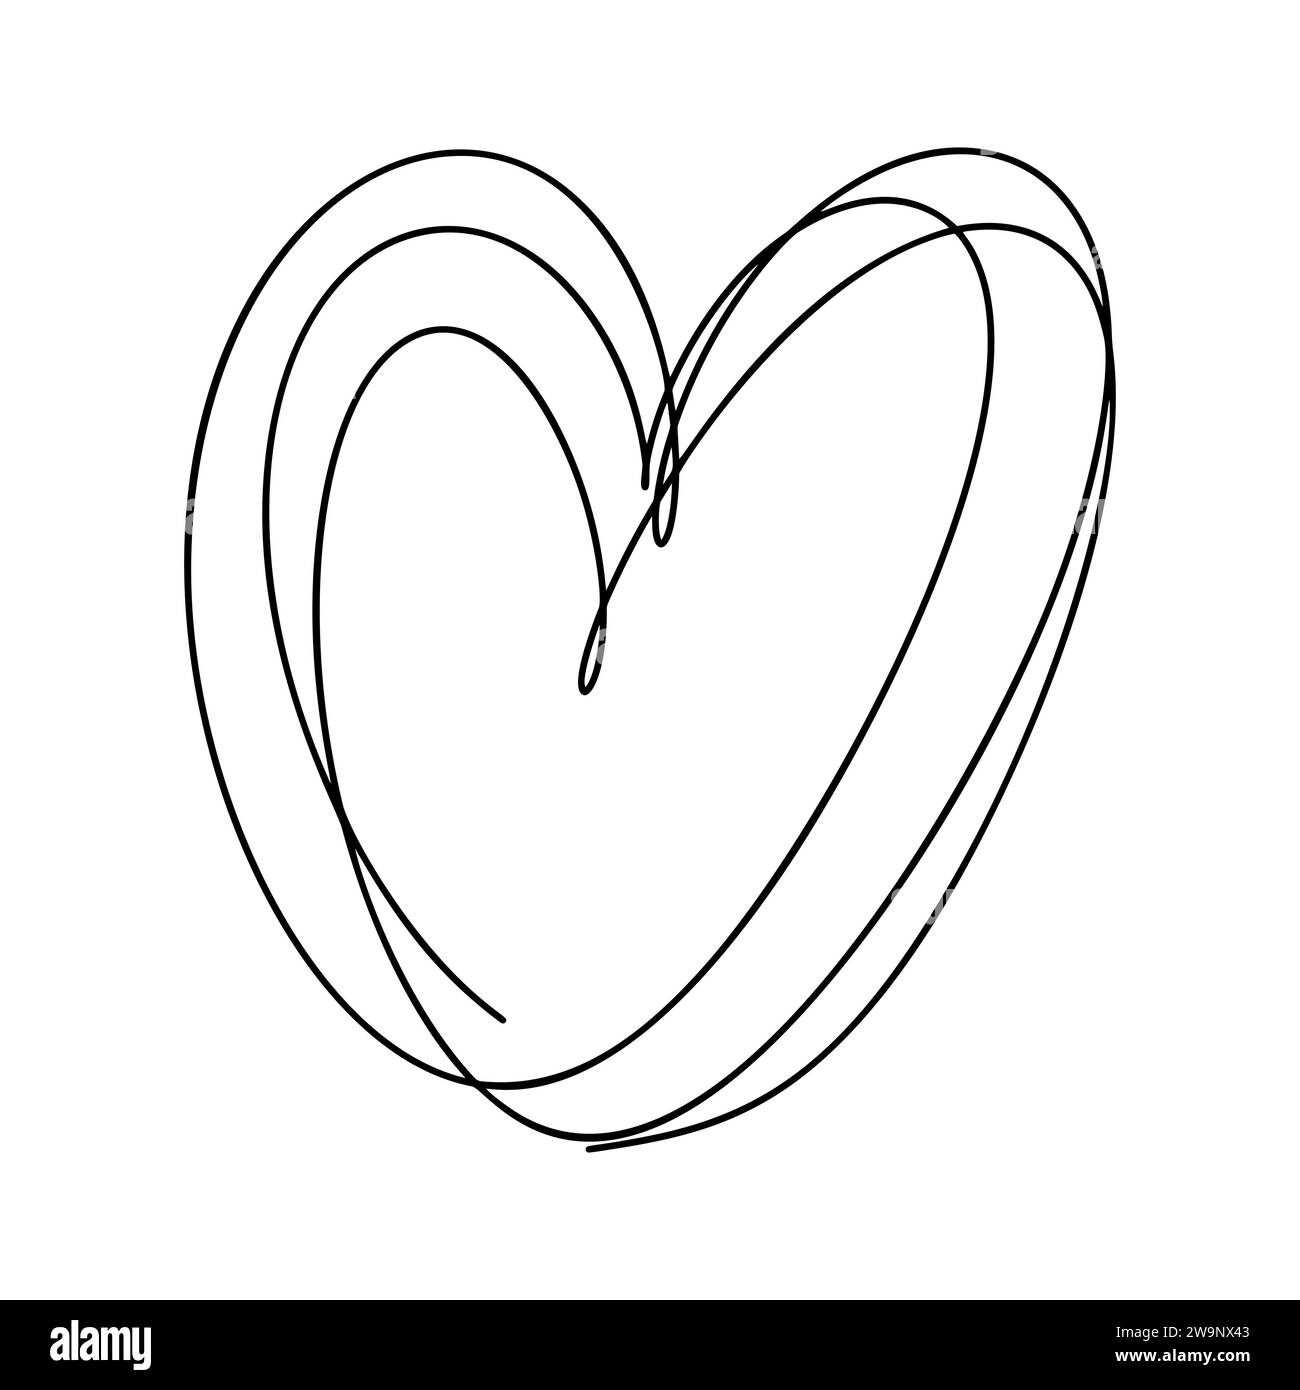 Love Heart Vektor Logo Linien Illustration. Schwarze Kontur. Element Monoline für Valentinstag Banner, Poster, Grußkarte Stock Vektor